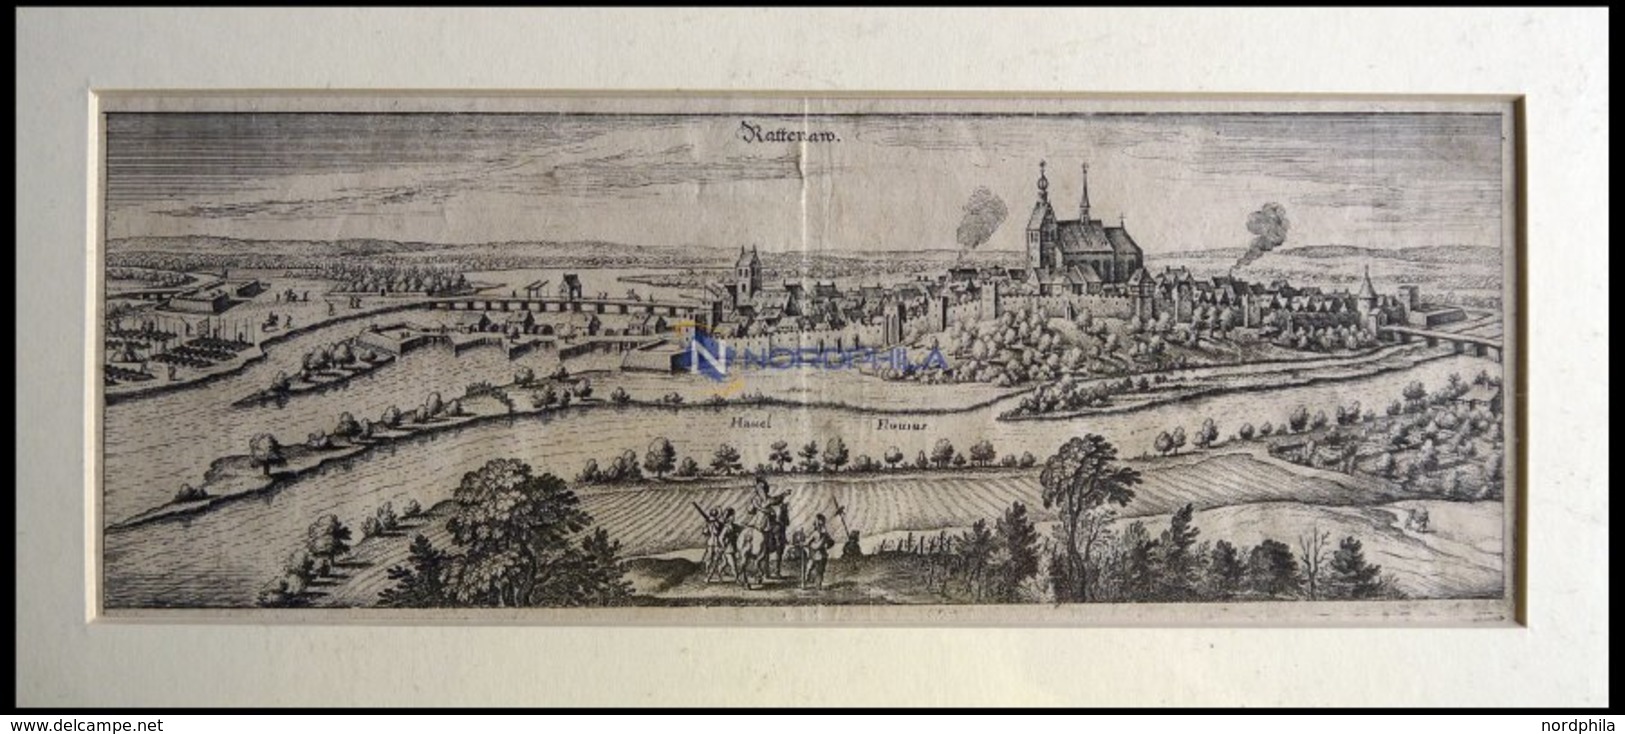 RATHENAU/HAVEL, Gesamtansicht, Kupferstich Von Merian Um 1645 - Lithographien